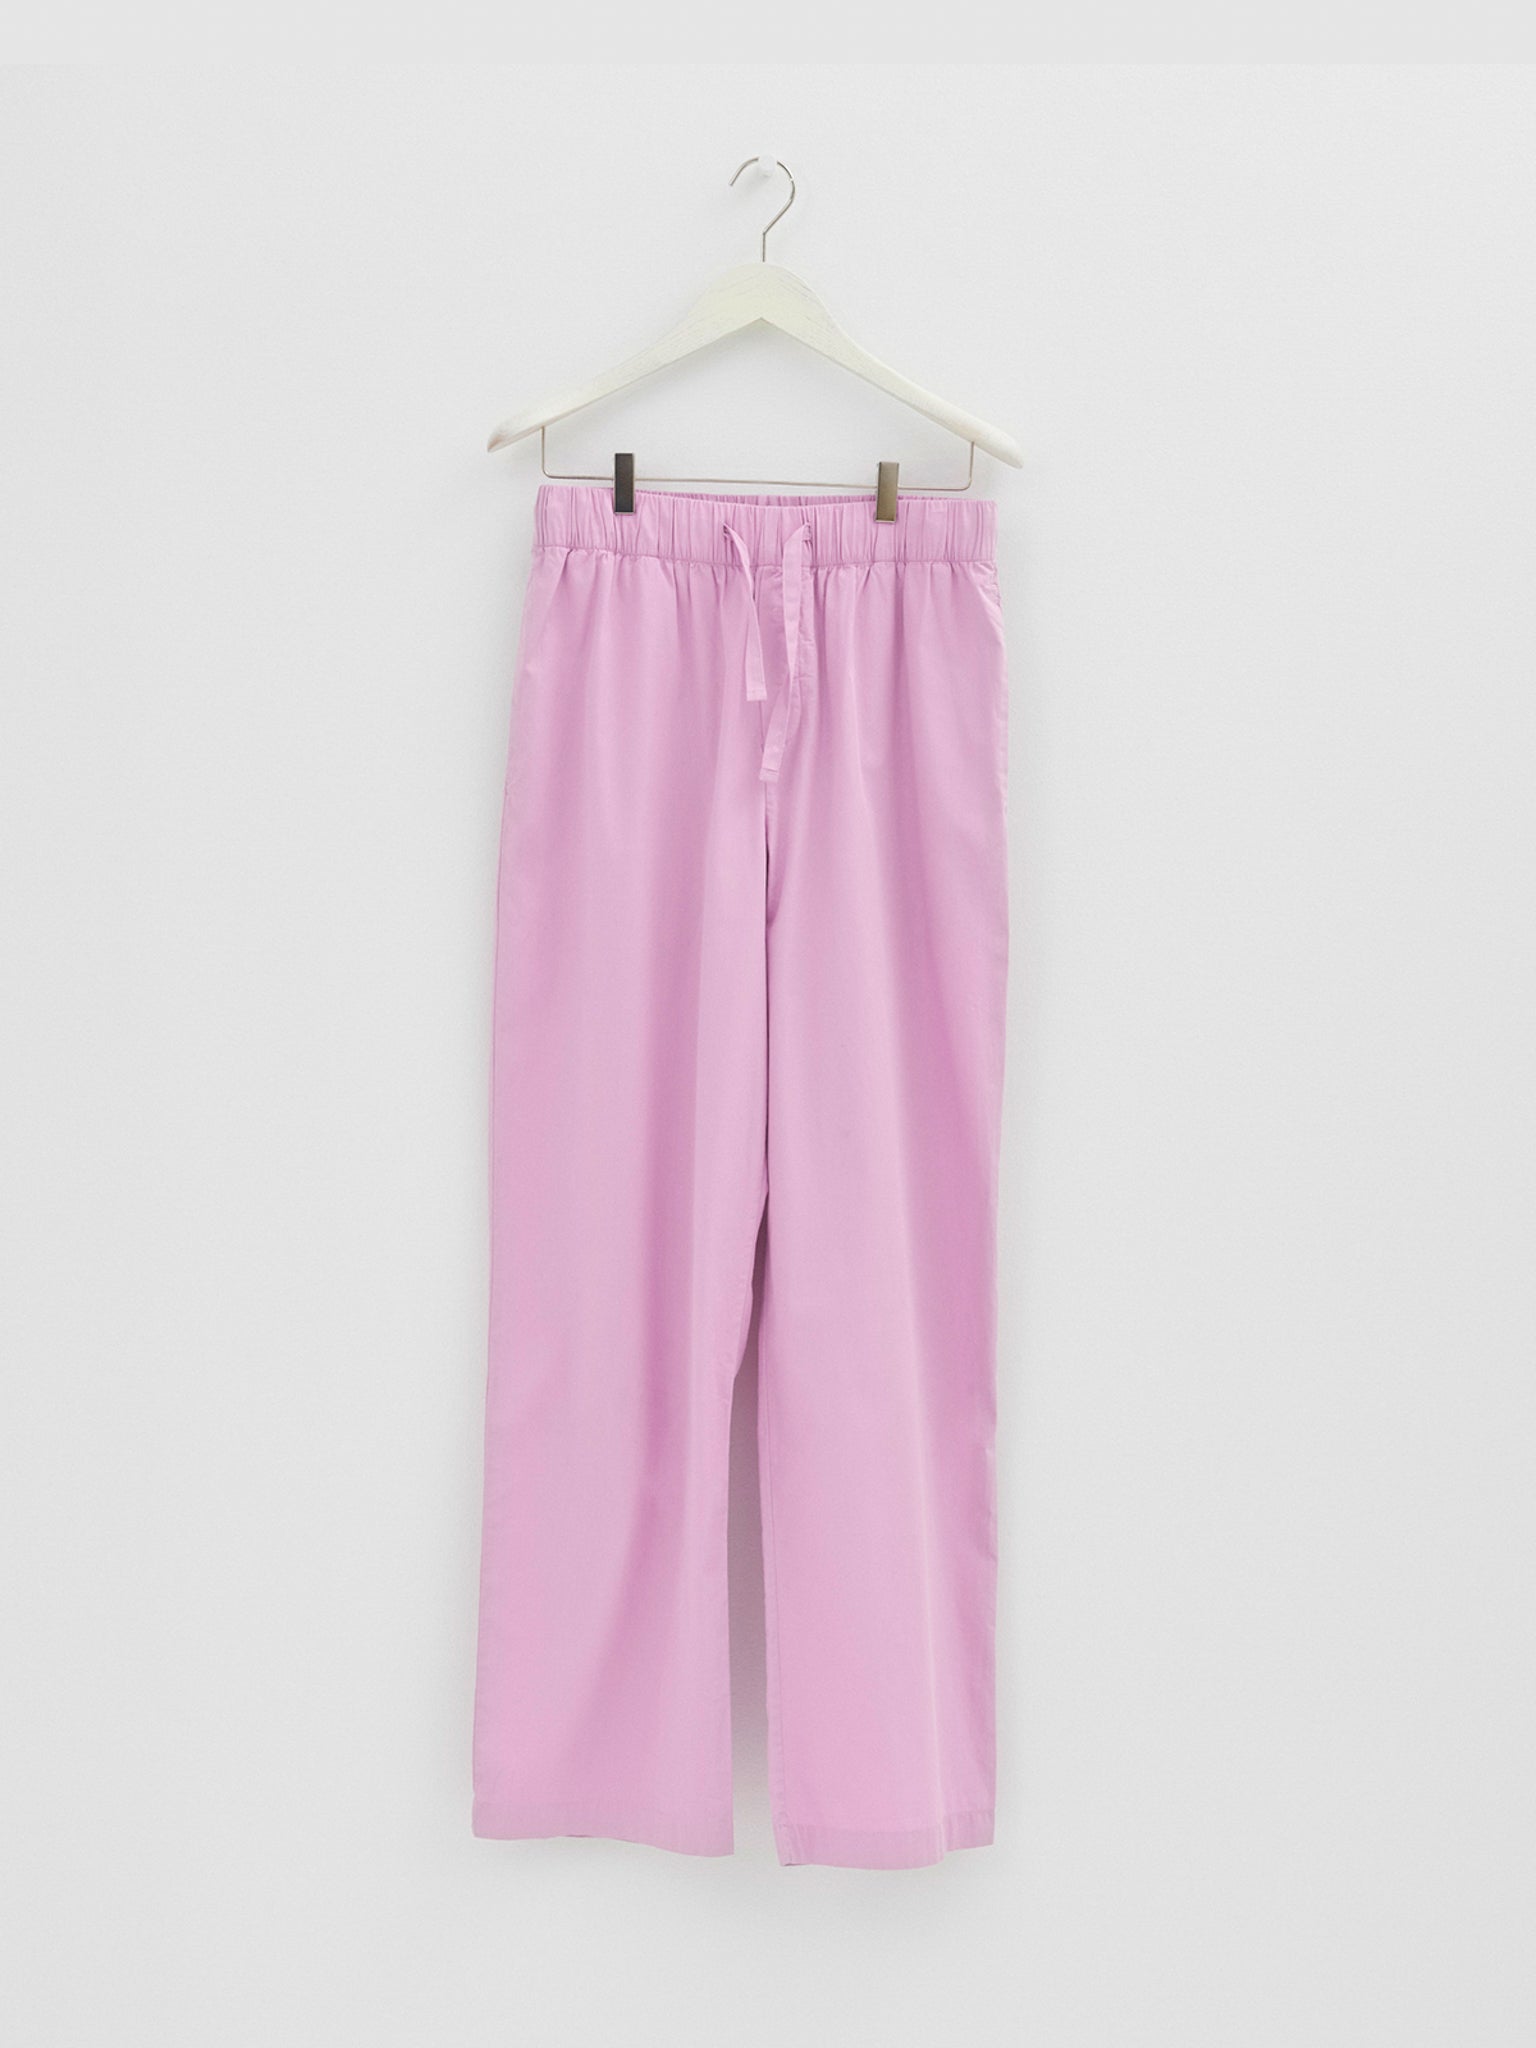 Tekla - Poplin Pyjamas Pants in Purple Pink